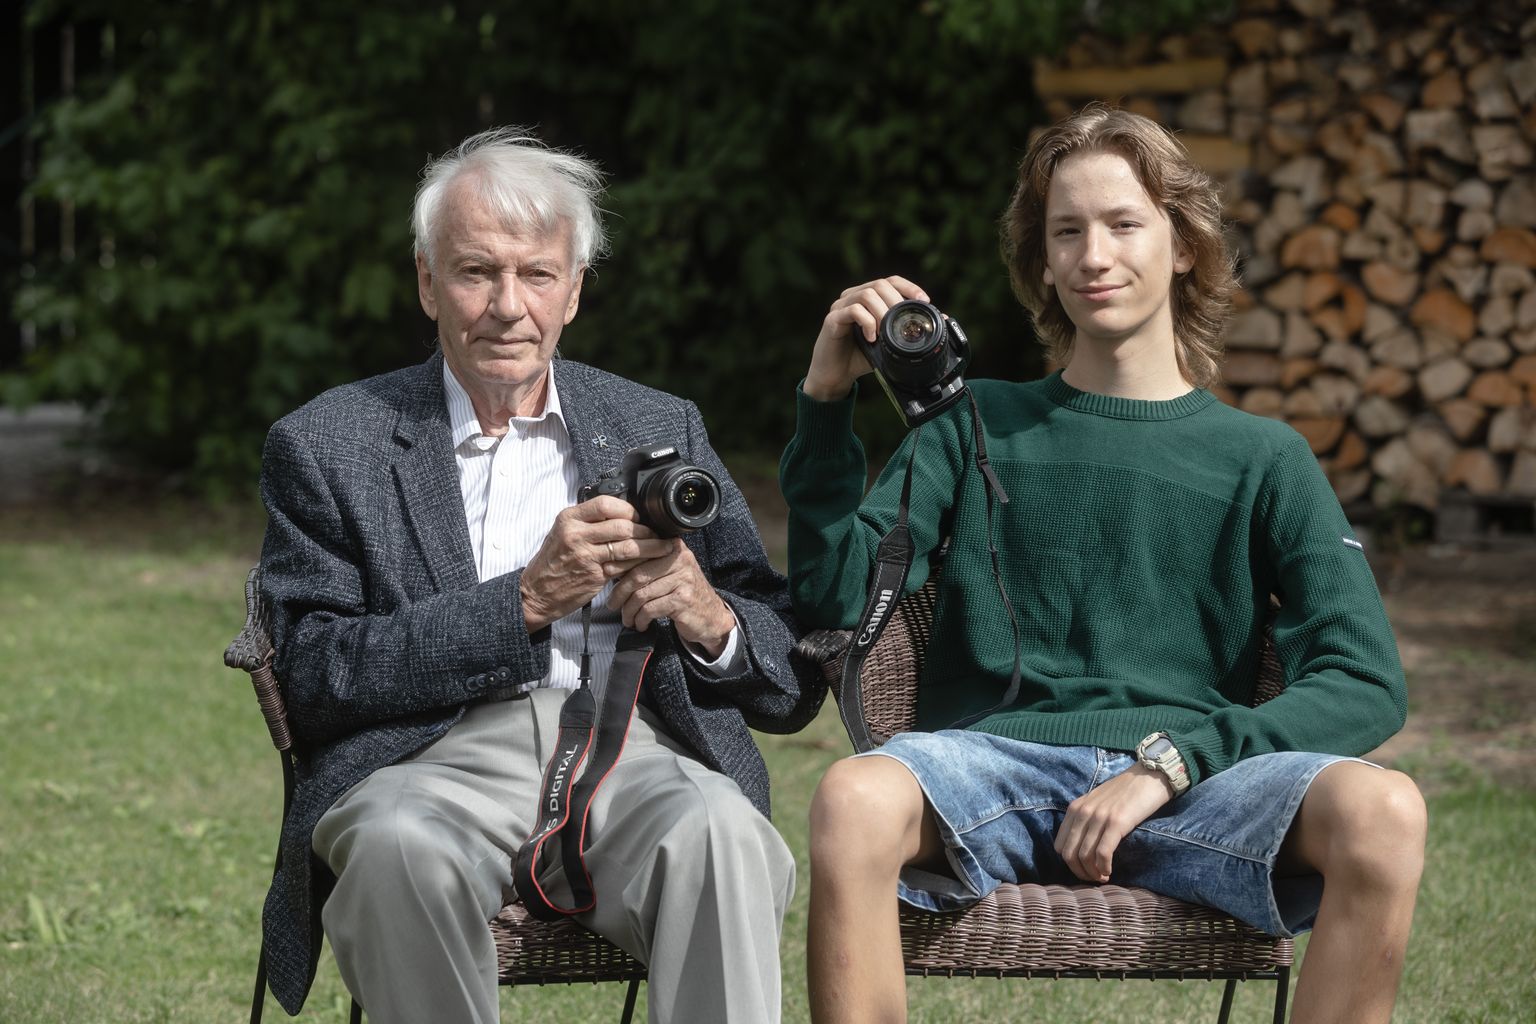 15-aastane fotohuviline Sander Arula ja tema vanaisa Tiit Saluvere, kes kinkis poisile oma fotoaparaadi.